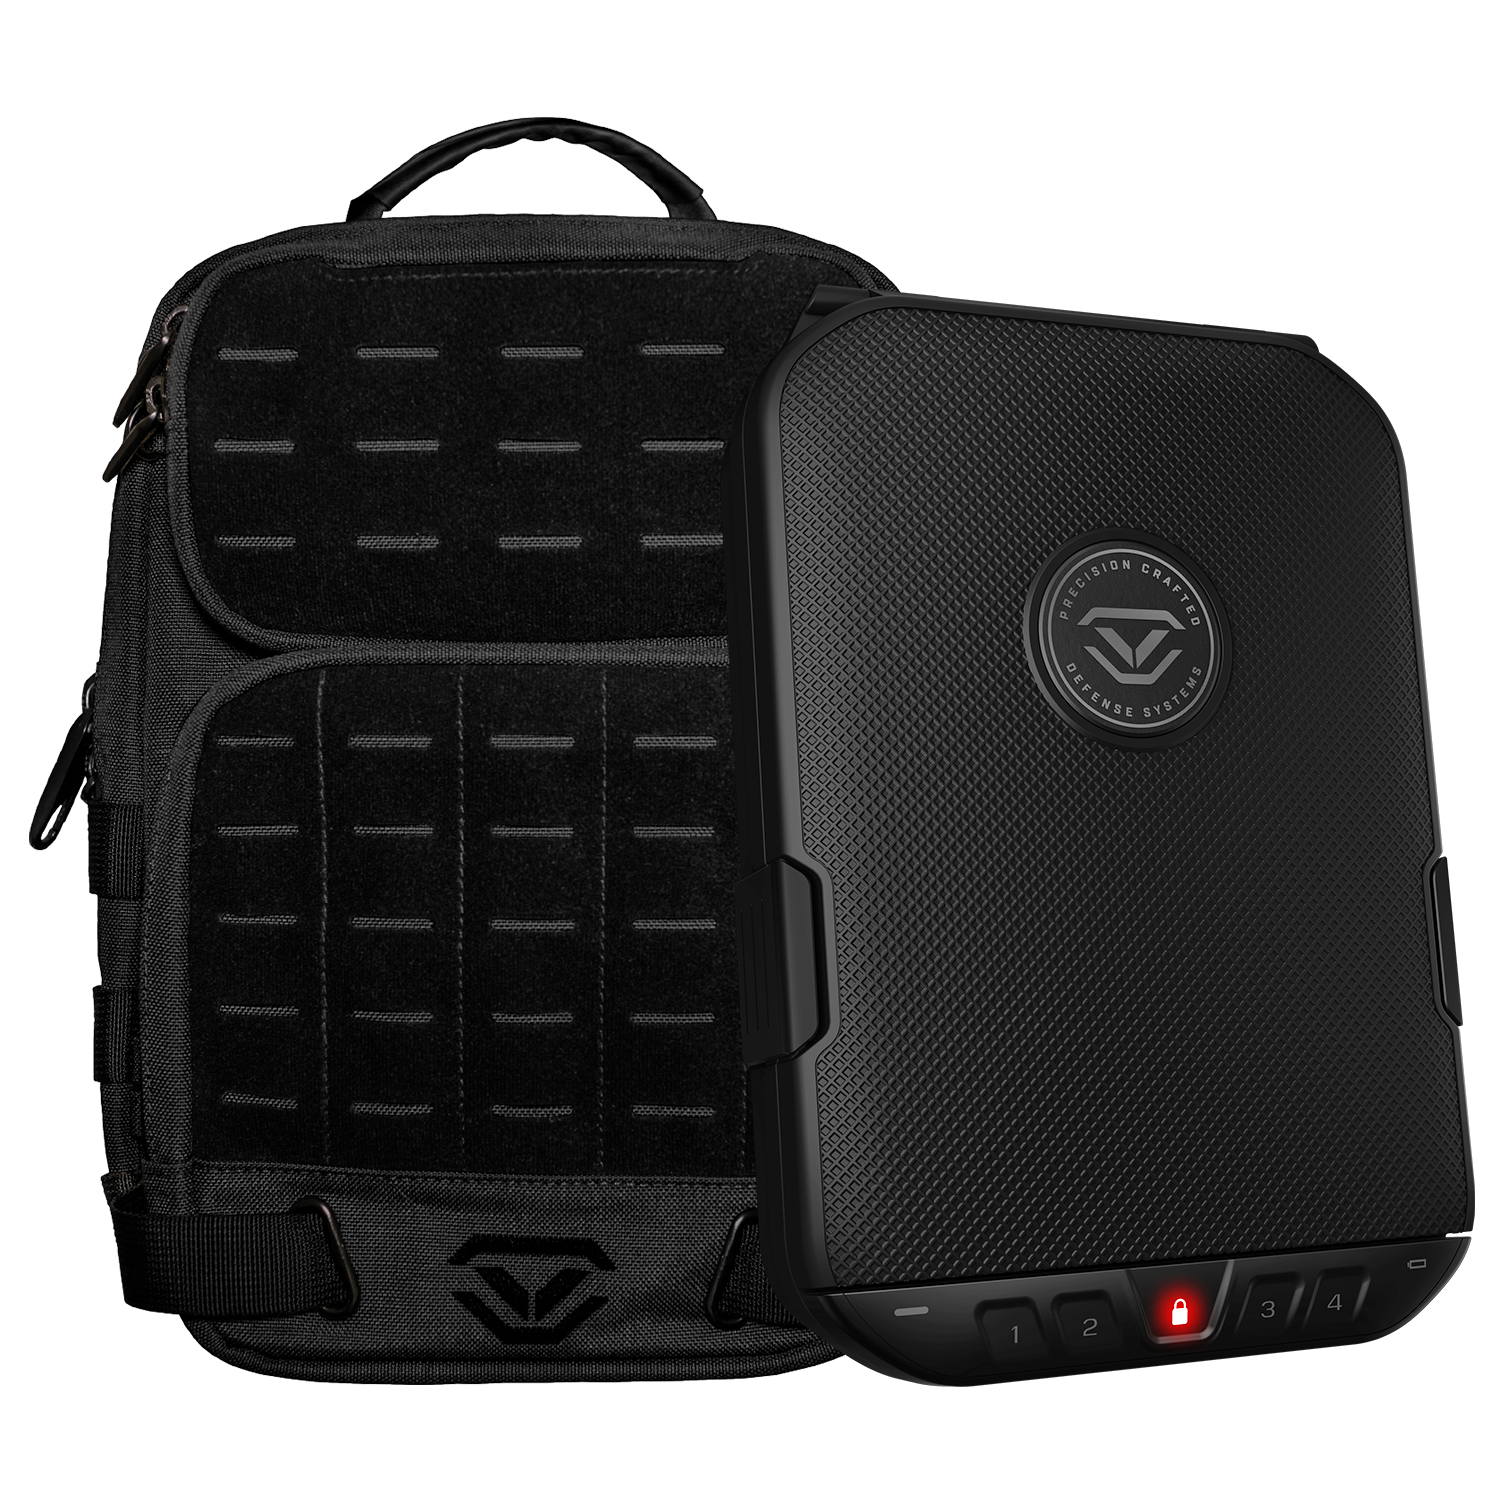 Vaultek Lifepod 2.0 and Tactical Slingbag Bundle Black